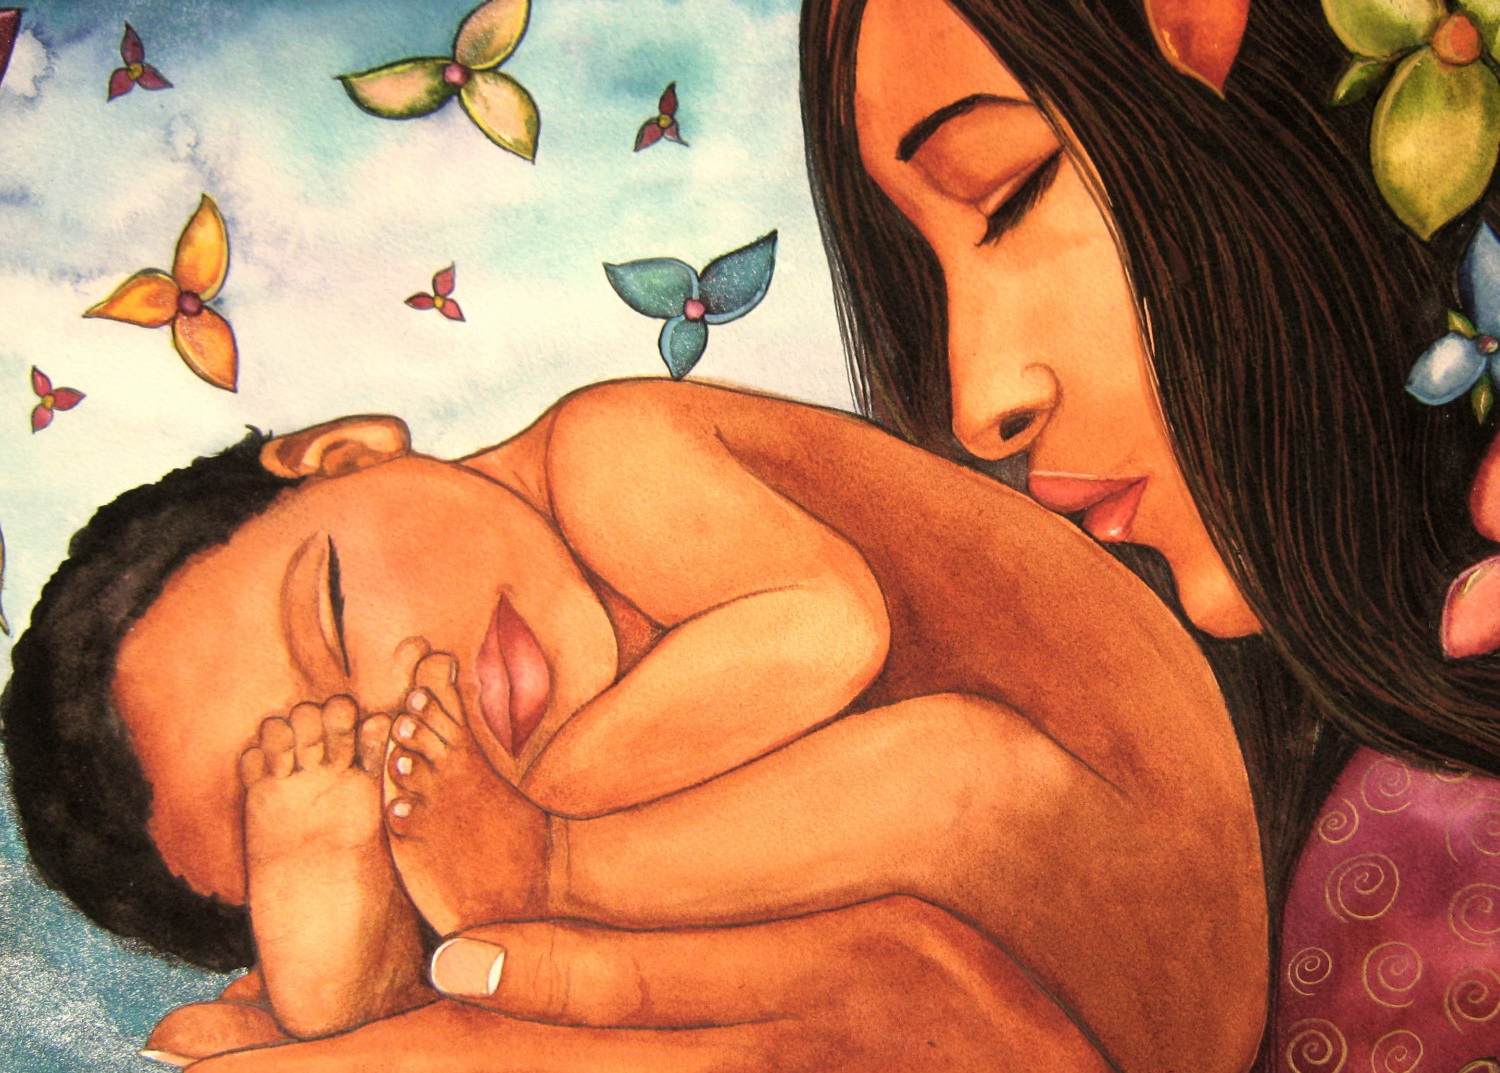 Бережное рождение. Claudia Tremblay картины мать и дитя. Клаудия Трембле картины материнство. Рождение ребенка арт. Любовь матери к ребенку.